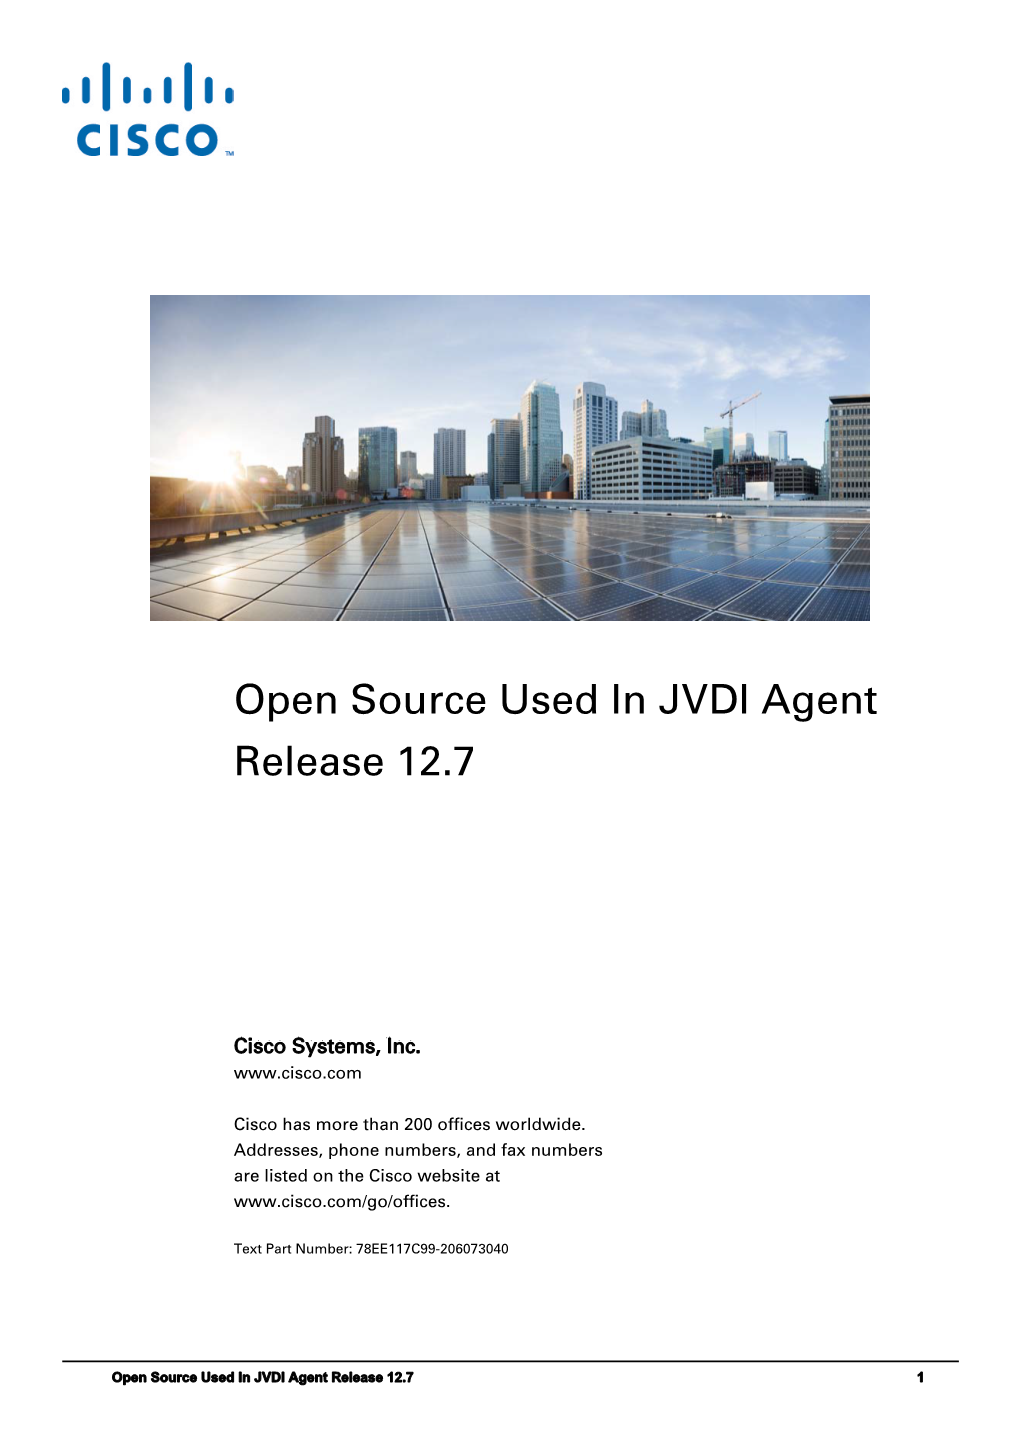 Licensing Information for Cisco JVDI Agent Release 12.7